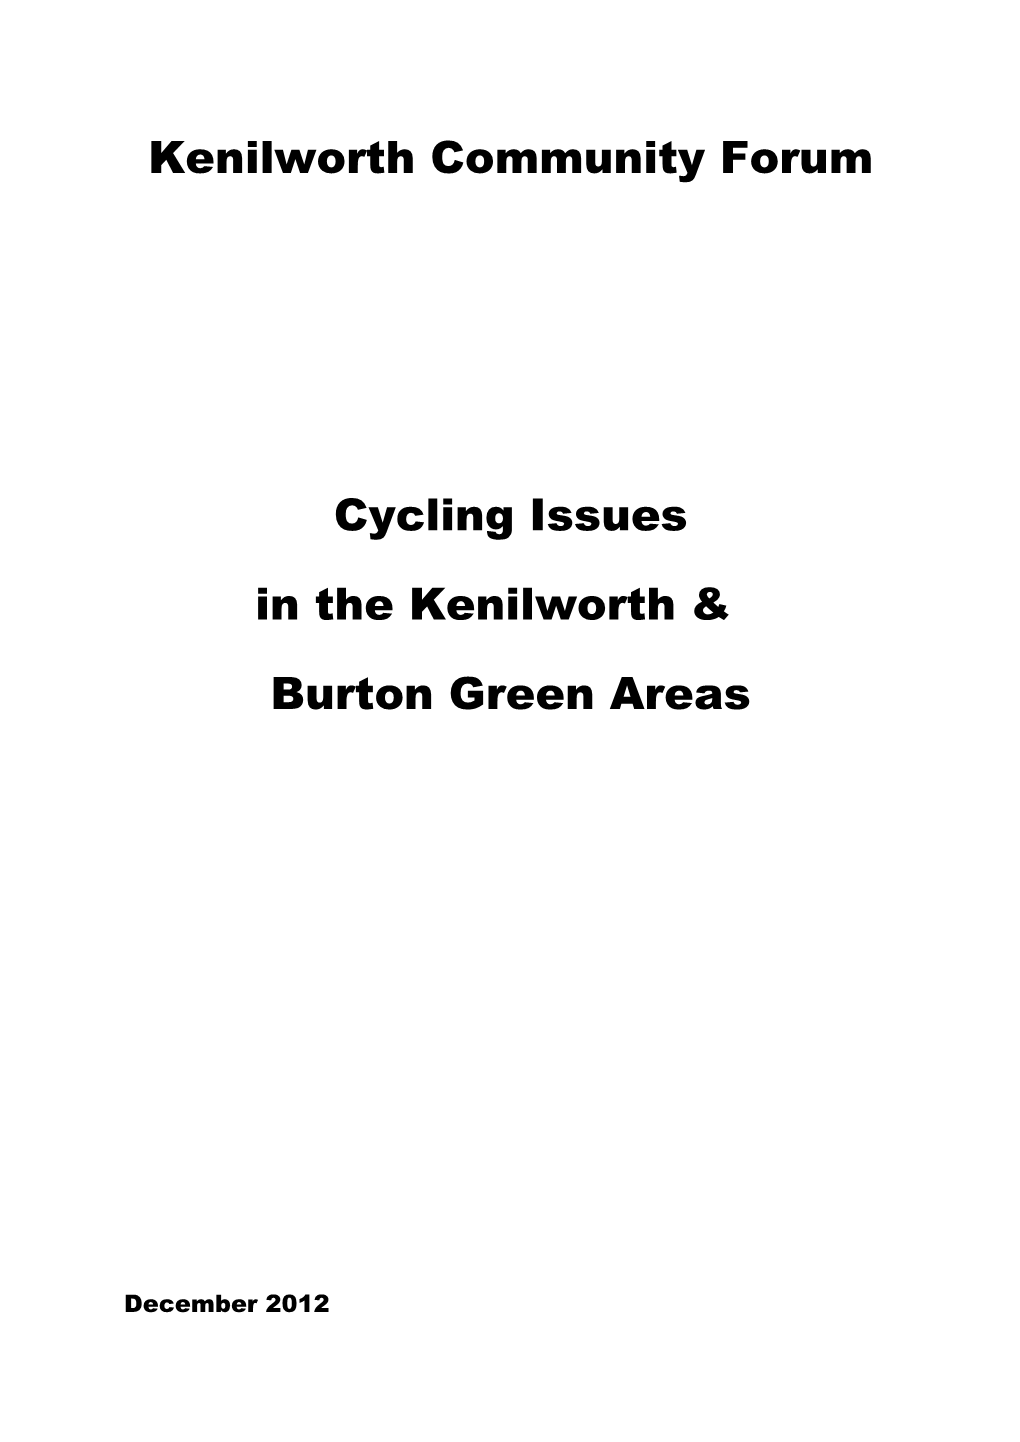 Kenilworth Community Forum Cycling Issues in the Kenilworth & Burton